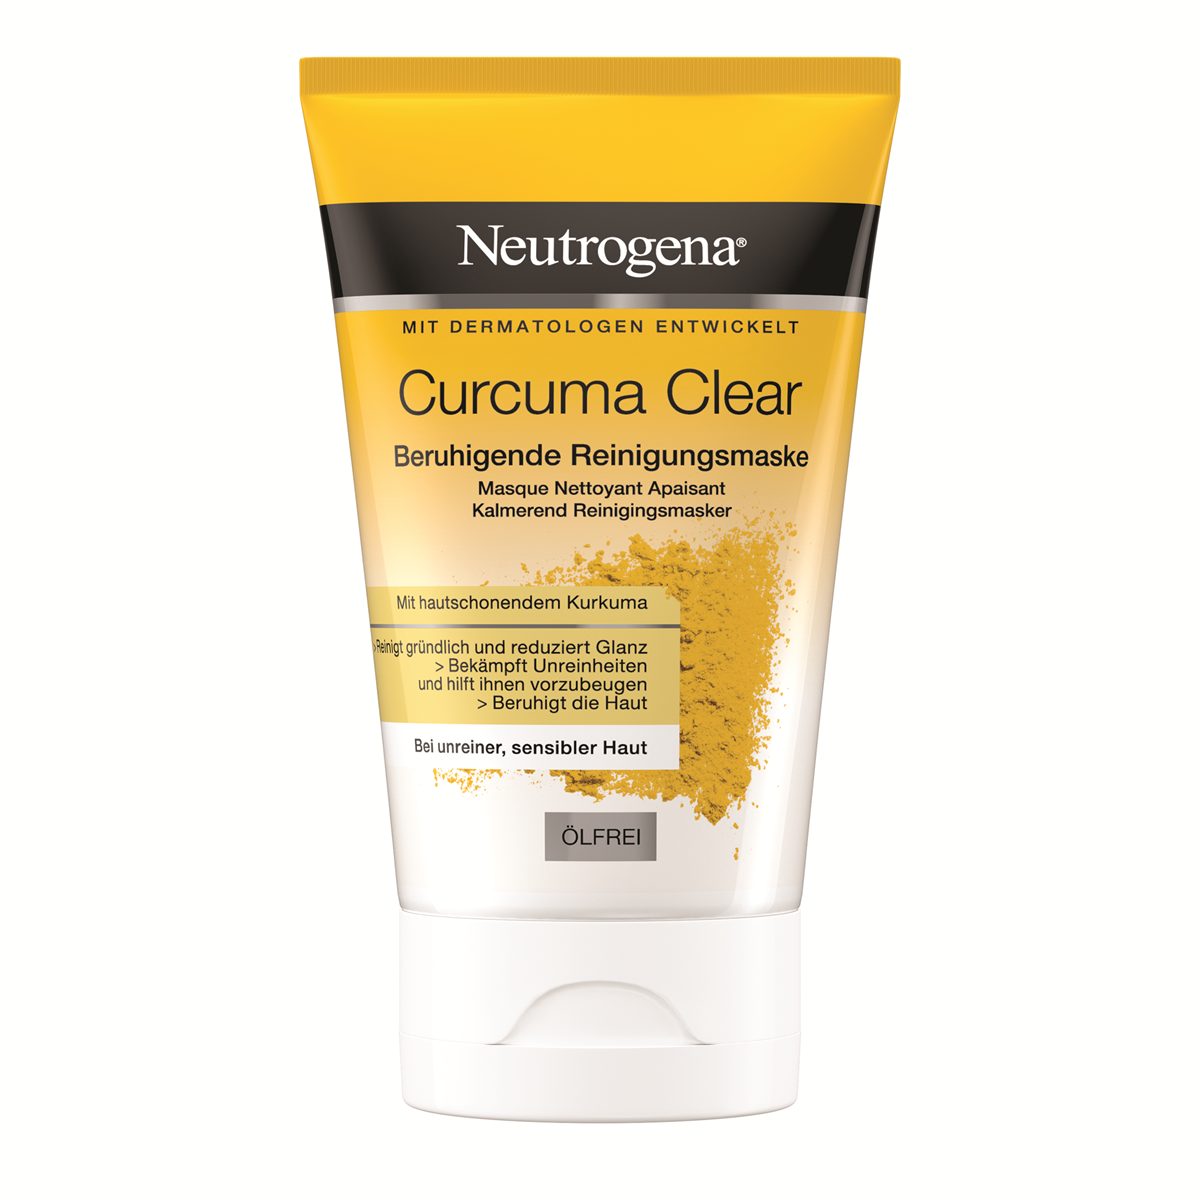 Neutrogena Curcuma Clear Beruhigende Reinigungsmaske Freisteller